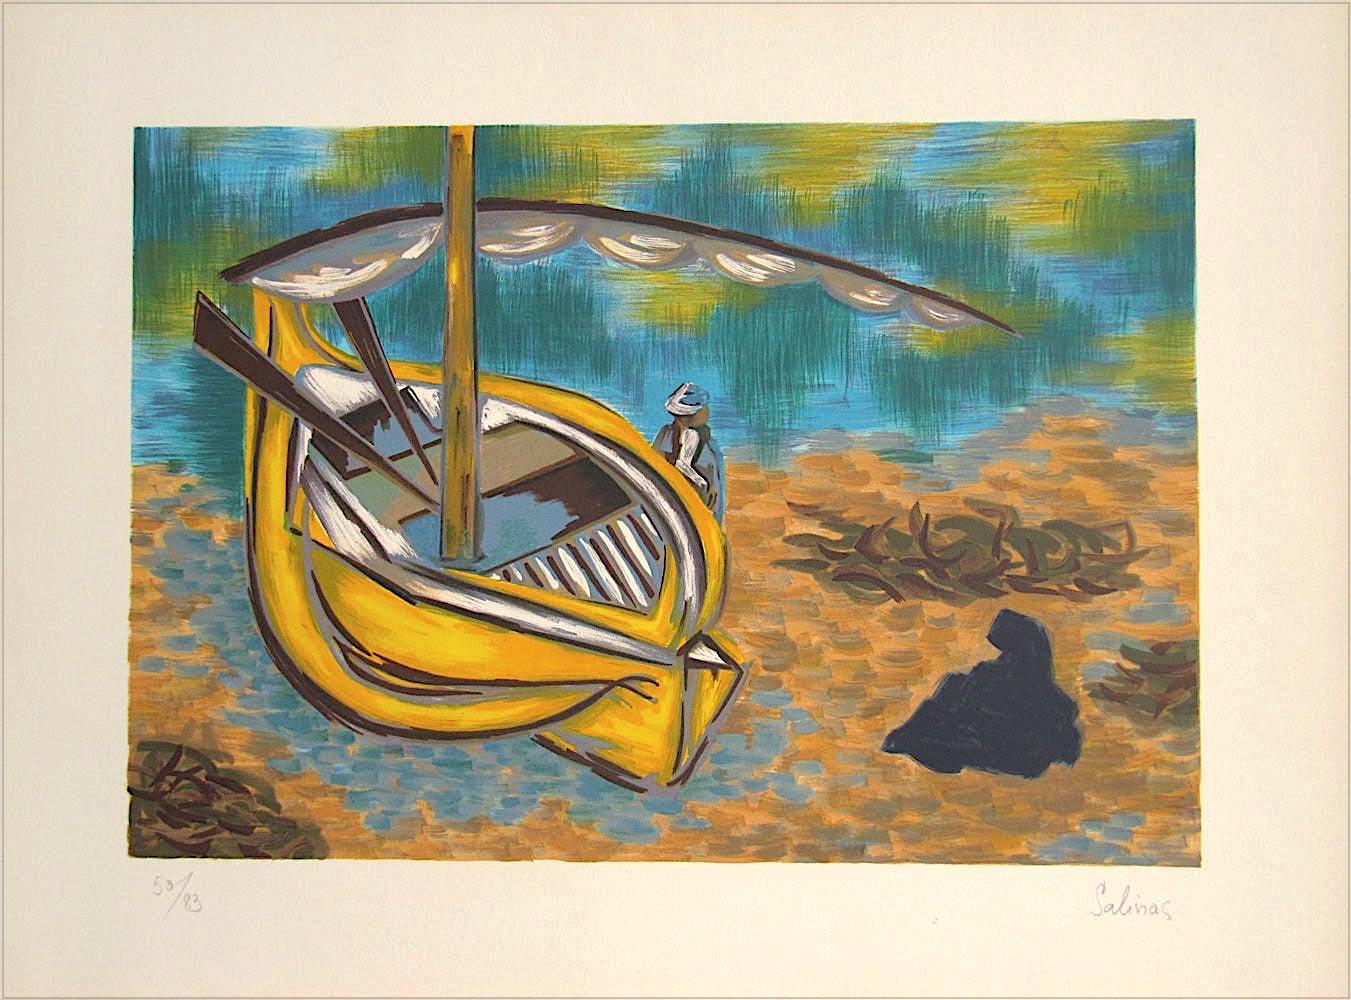 Figurative Print Laurent Marcel Salinas - Lithographie signée YELLOW BOAT, homme allongé sur un bateau de voile jaune, eau turquoise